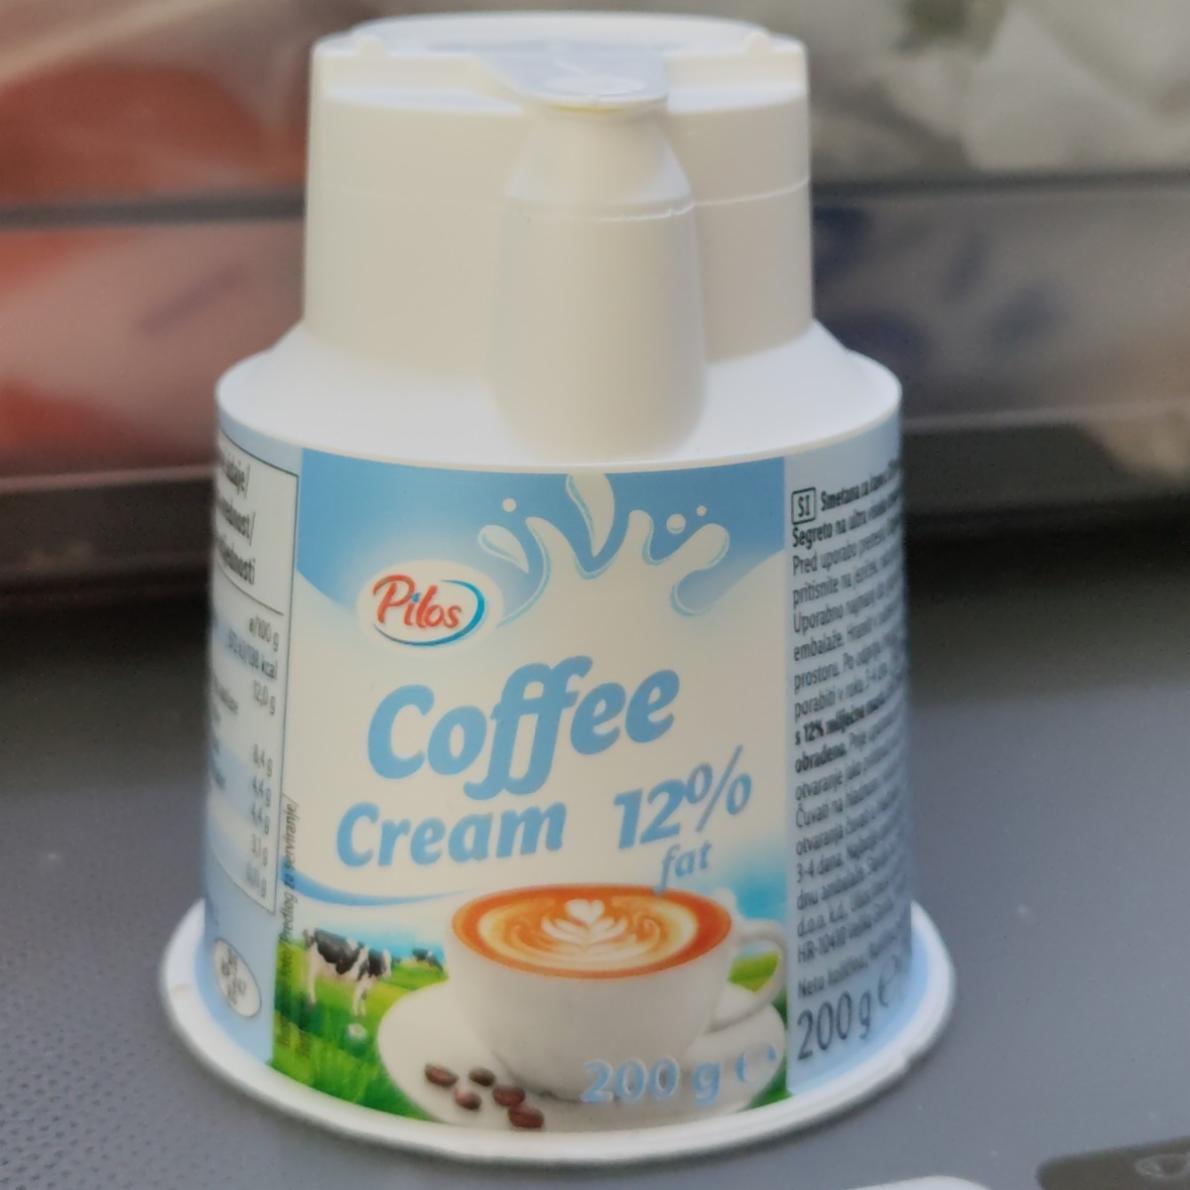 Fotografie - Coffee Cream 12% fat Pilos